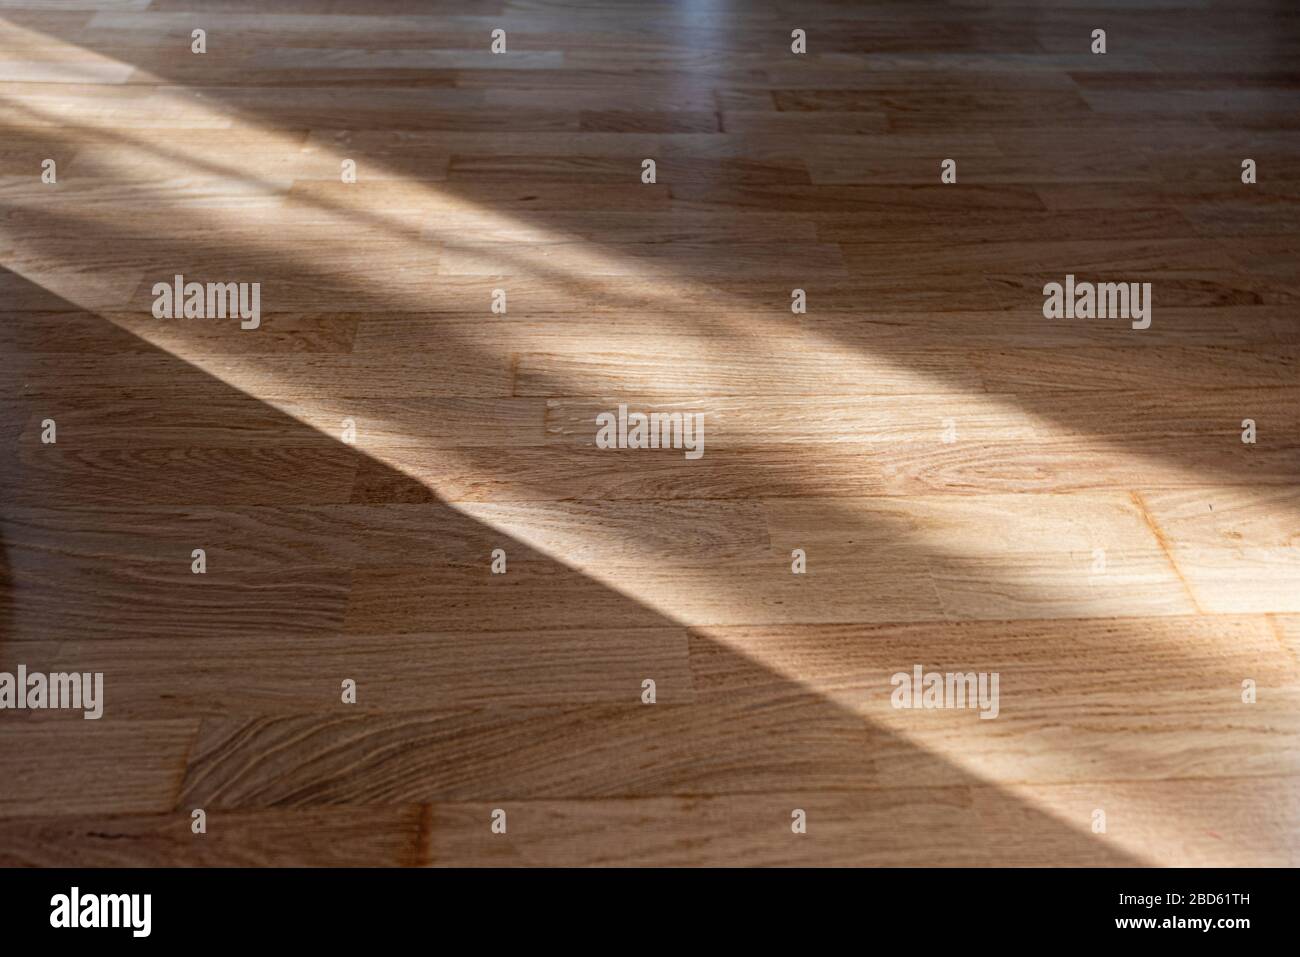 Rayos solares o vigas en suelos de madera, líneas de luz solar sombra en parquet, interior con luz solar Foto de stock